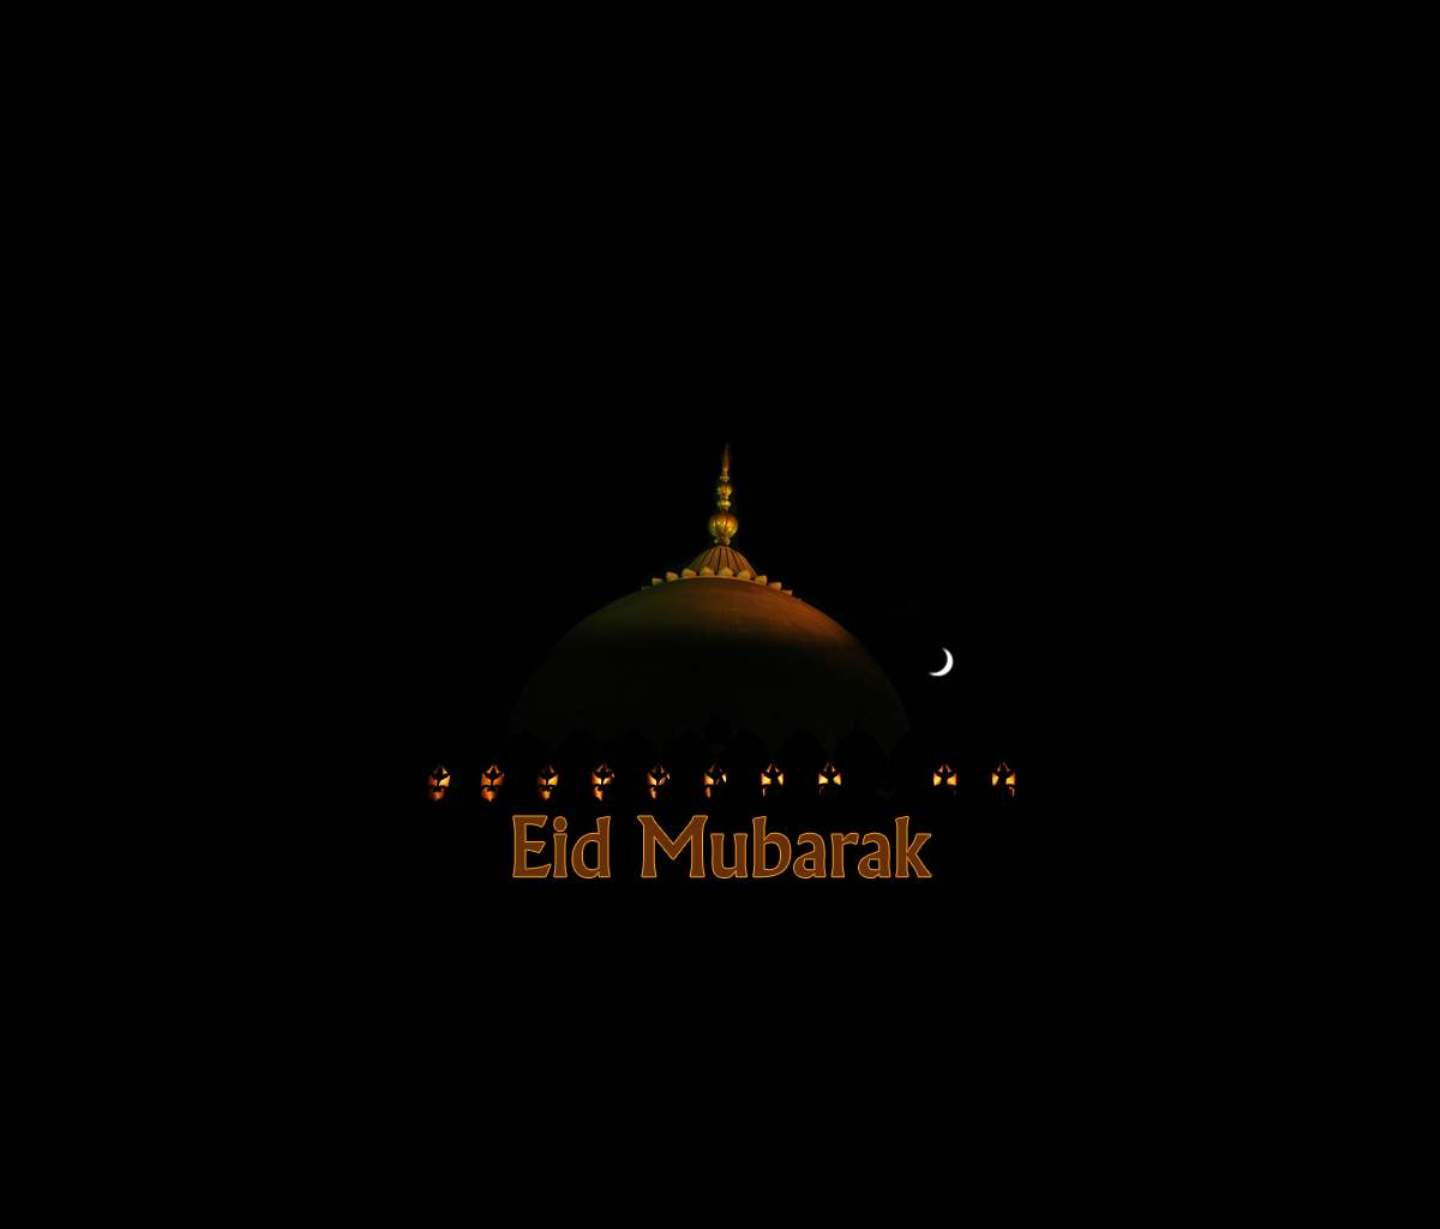 Free Download 2015 Eid ul Fitr Wallpapers